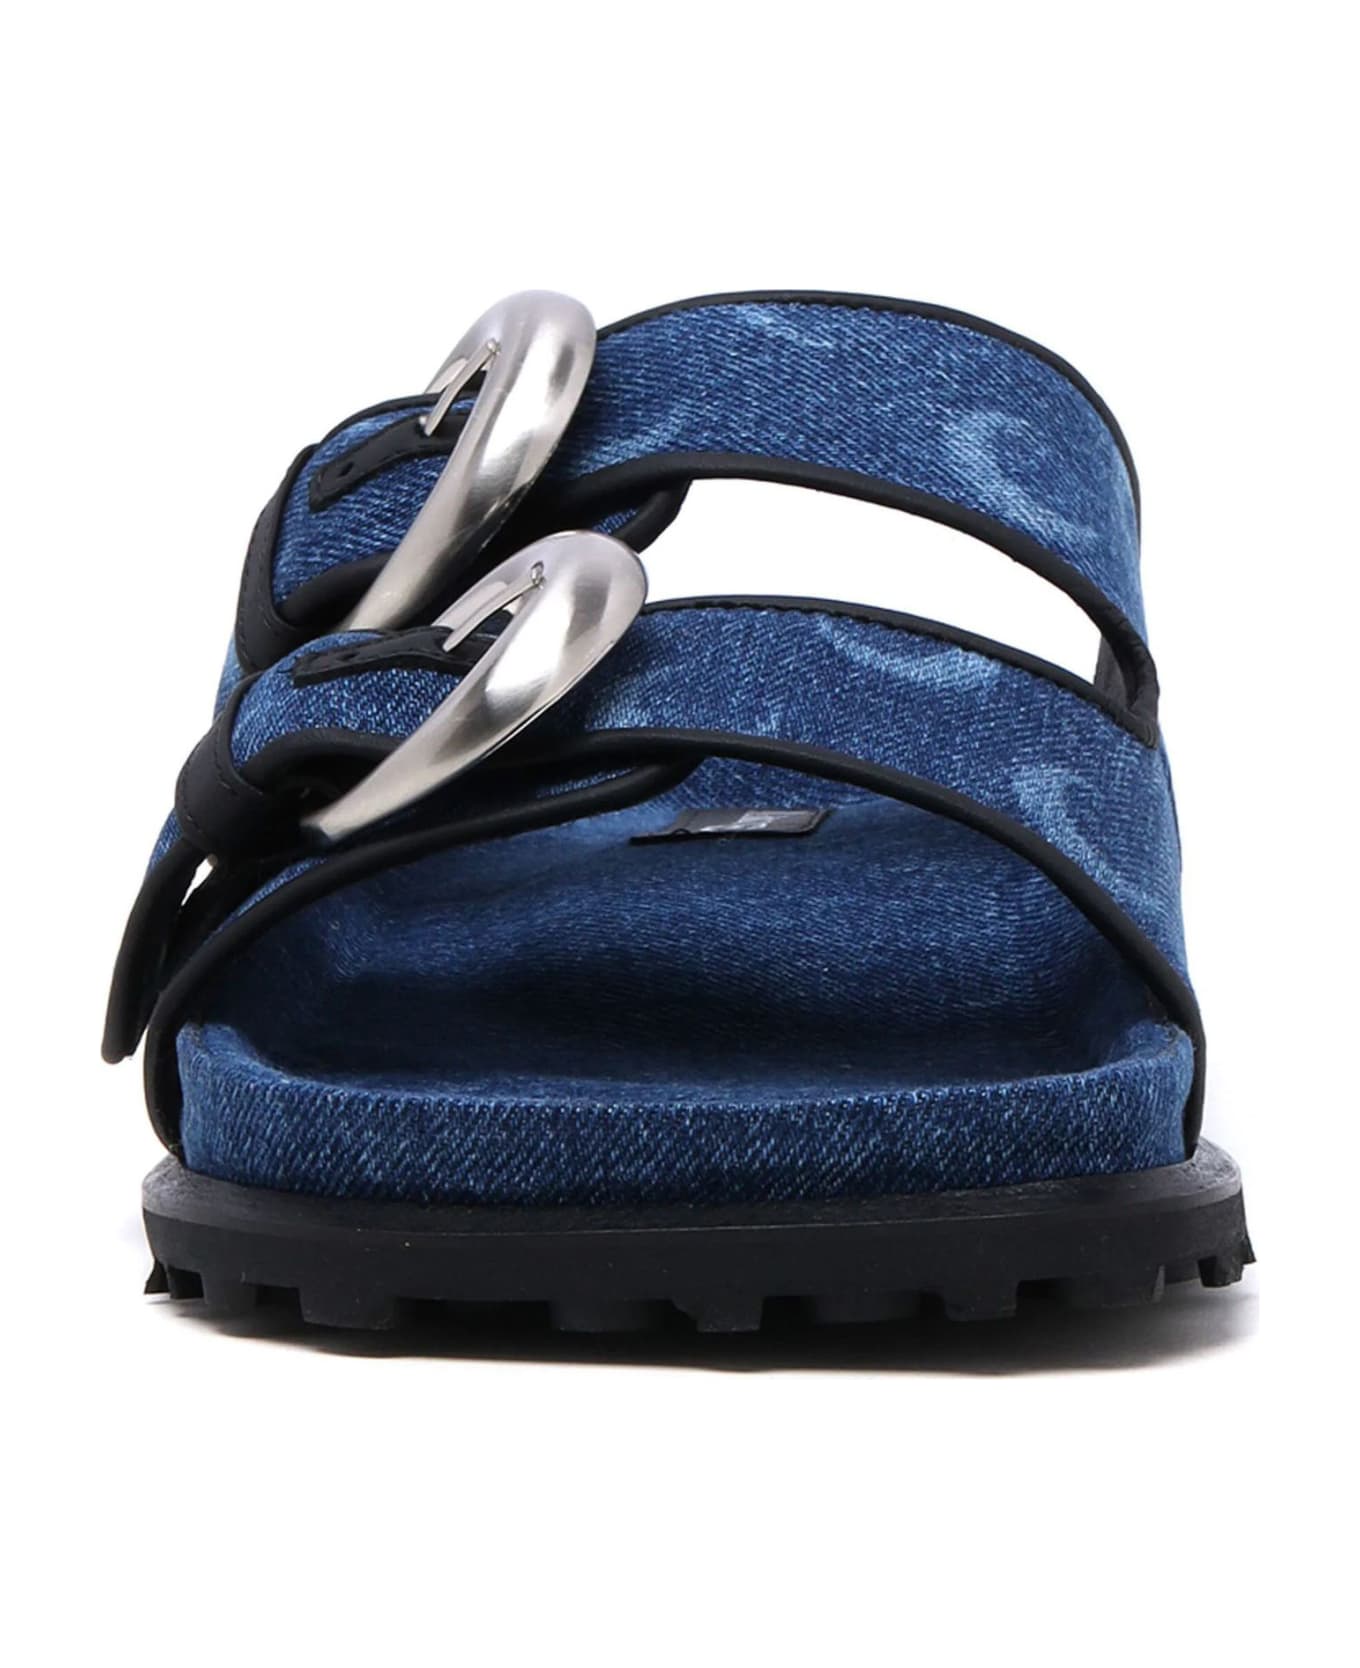 Marine Serre Blue Cotton Denim Sandals - Blue